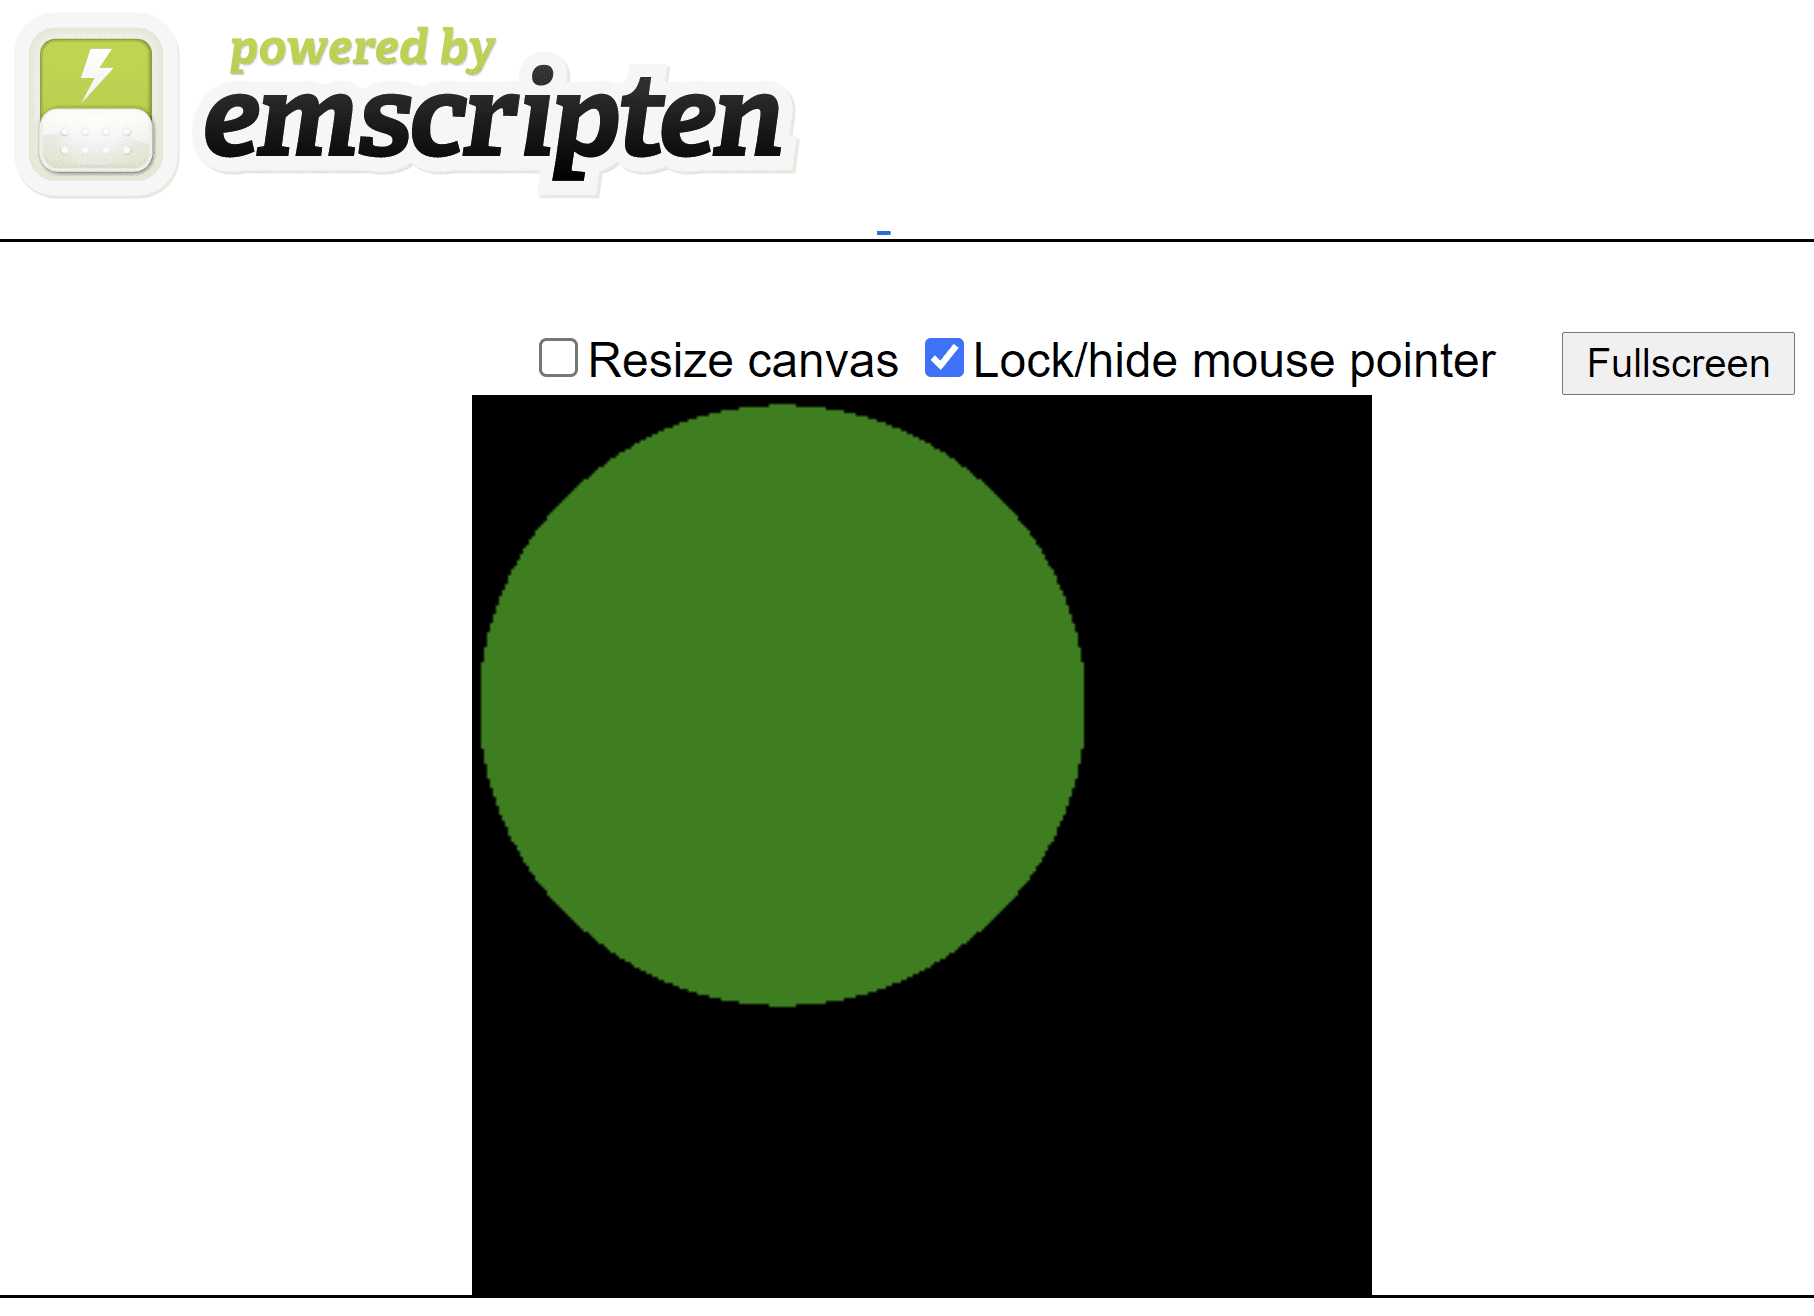 صفحة HTML تم إنشاؤها باستخدام نصوص توضيحية تعرض دائرة خضراء على لوحة مربّعة سوداء